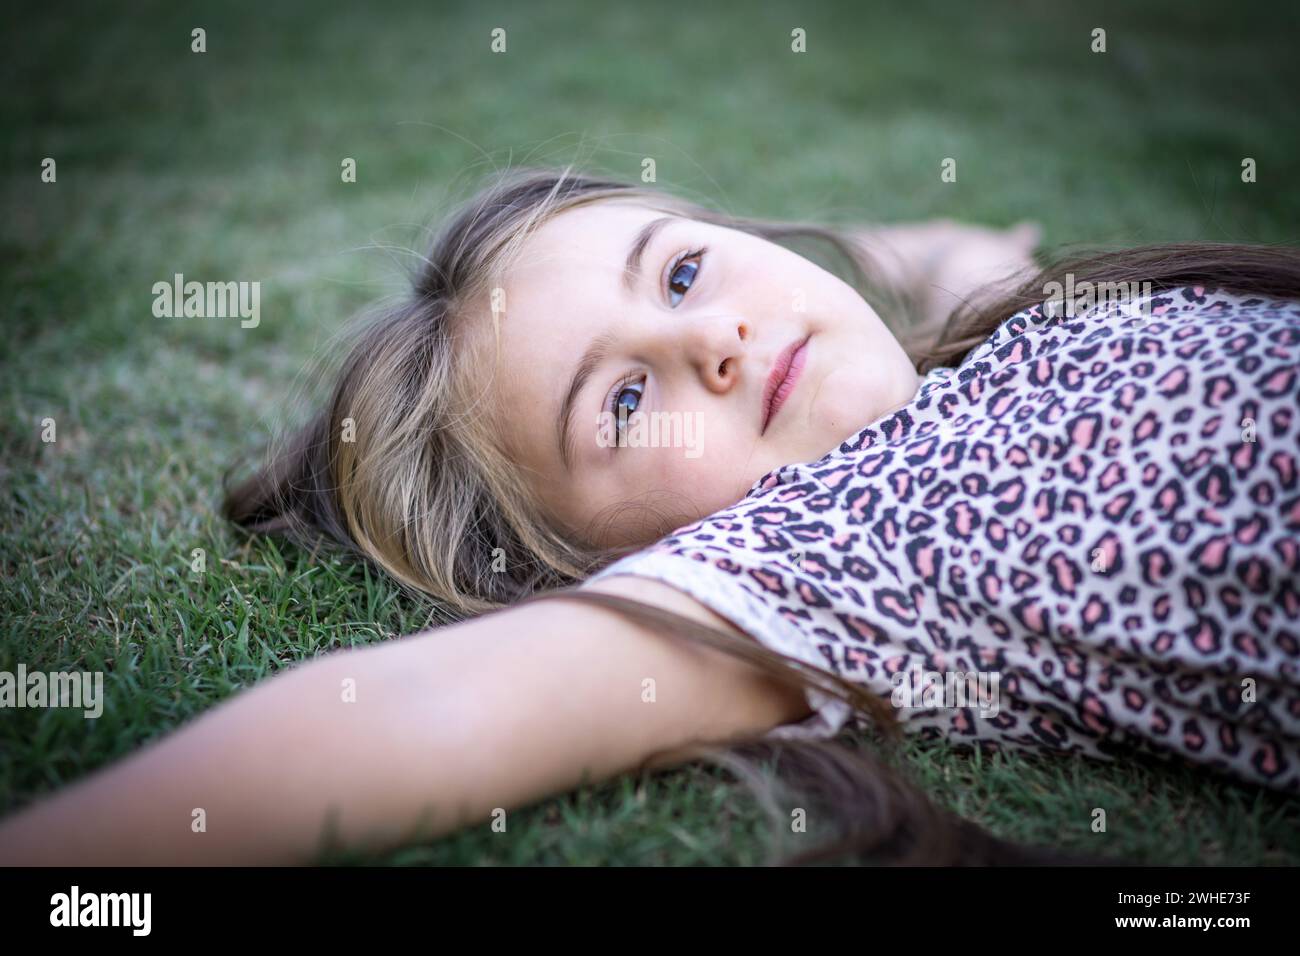 Hermosa muchacha rubia con gracia mientras disfruta de la naturaleza en un escenario al aire libre lleno de verdor y luz y recostada en el césped Foto Stock